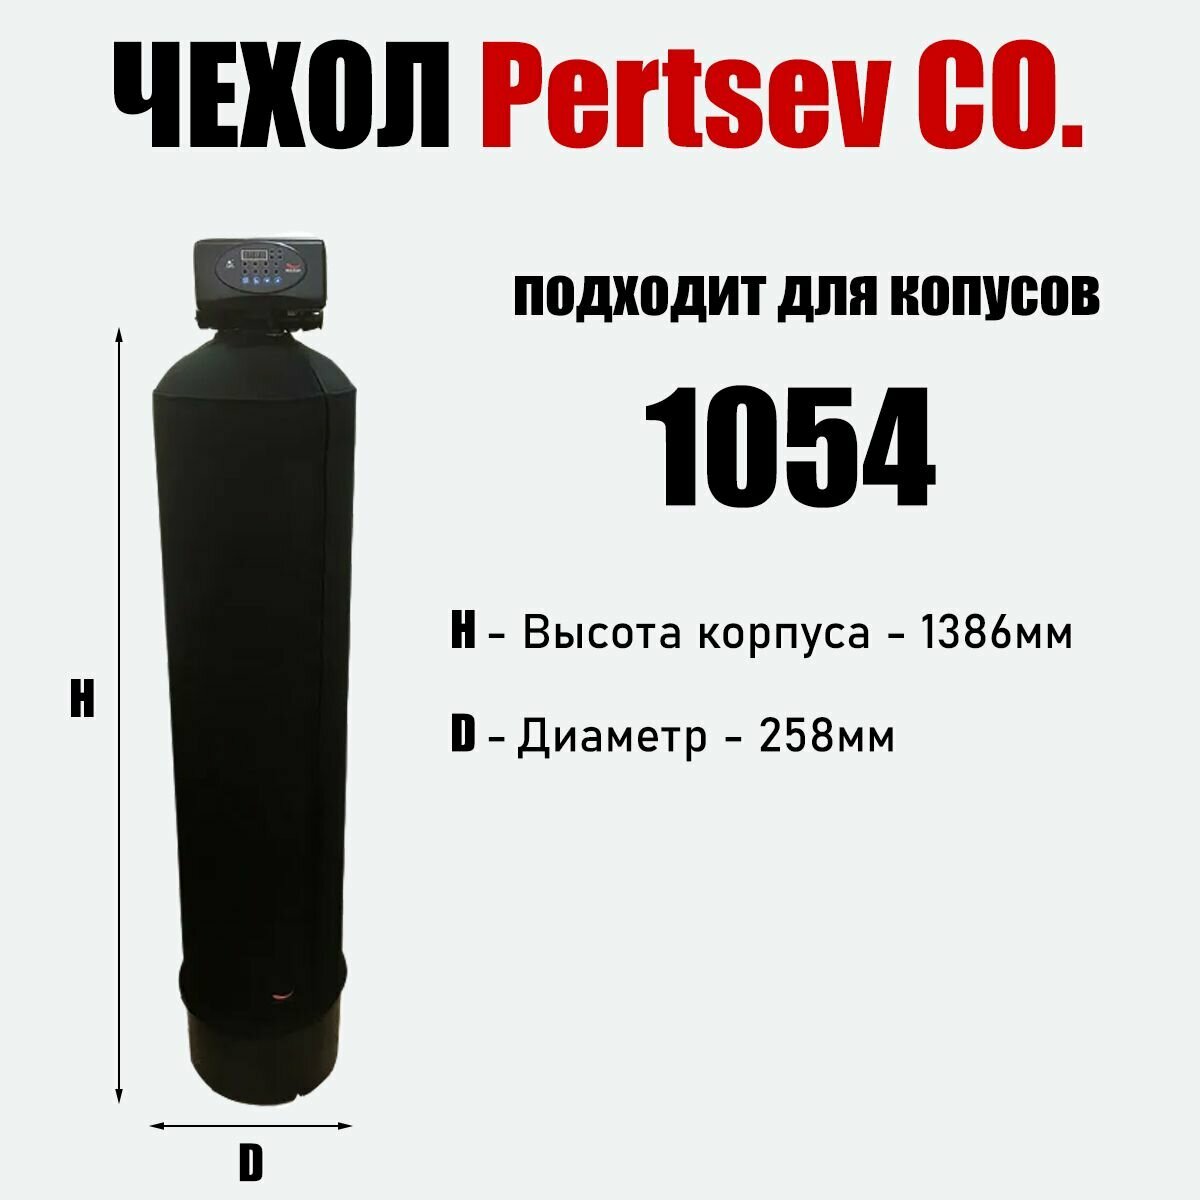 Антиконденсатный чехол на молнии для корпуса 1054 Черный Pertsev Co.